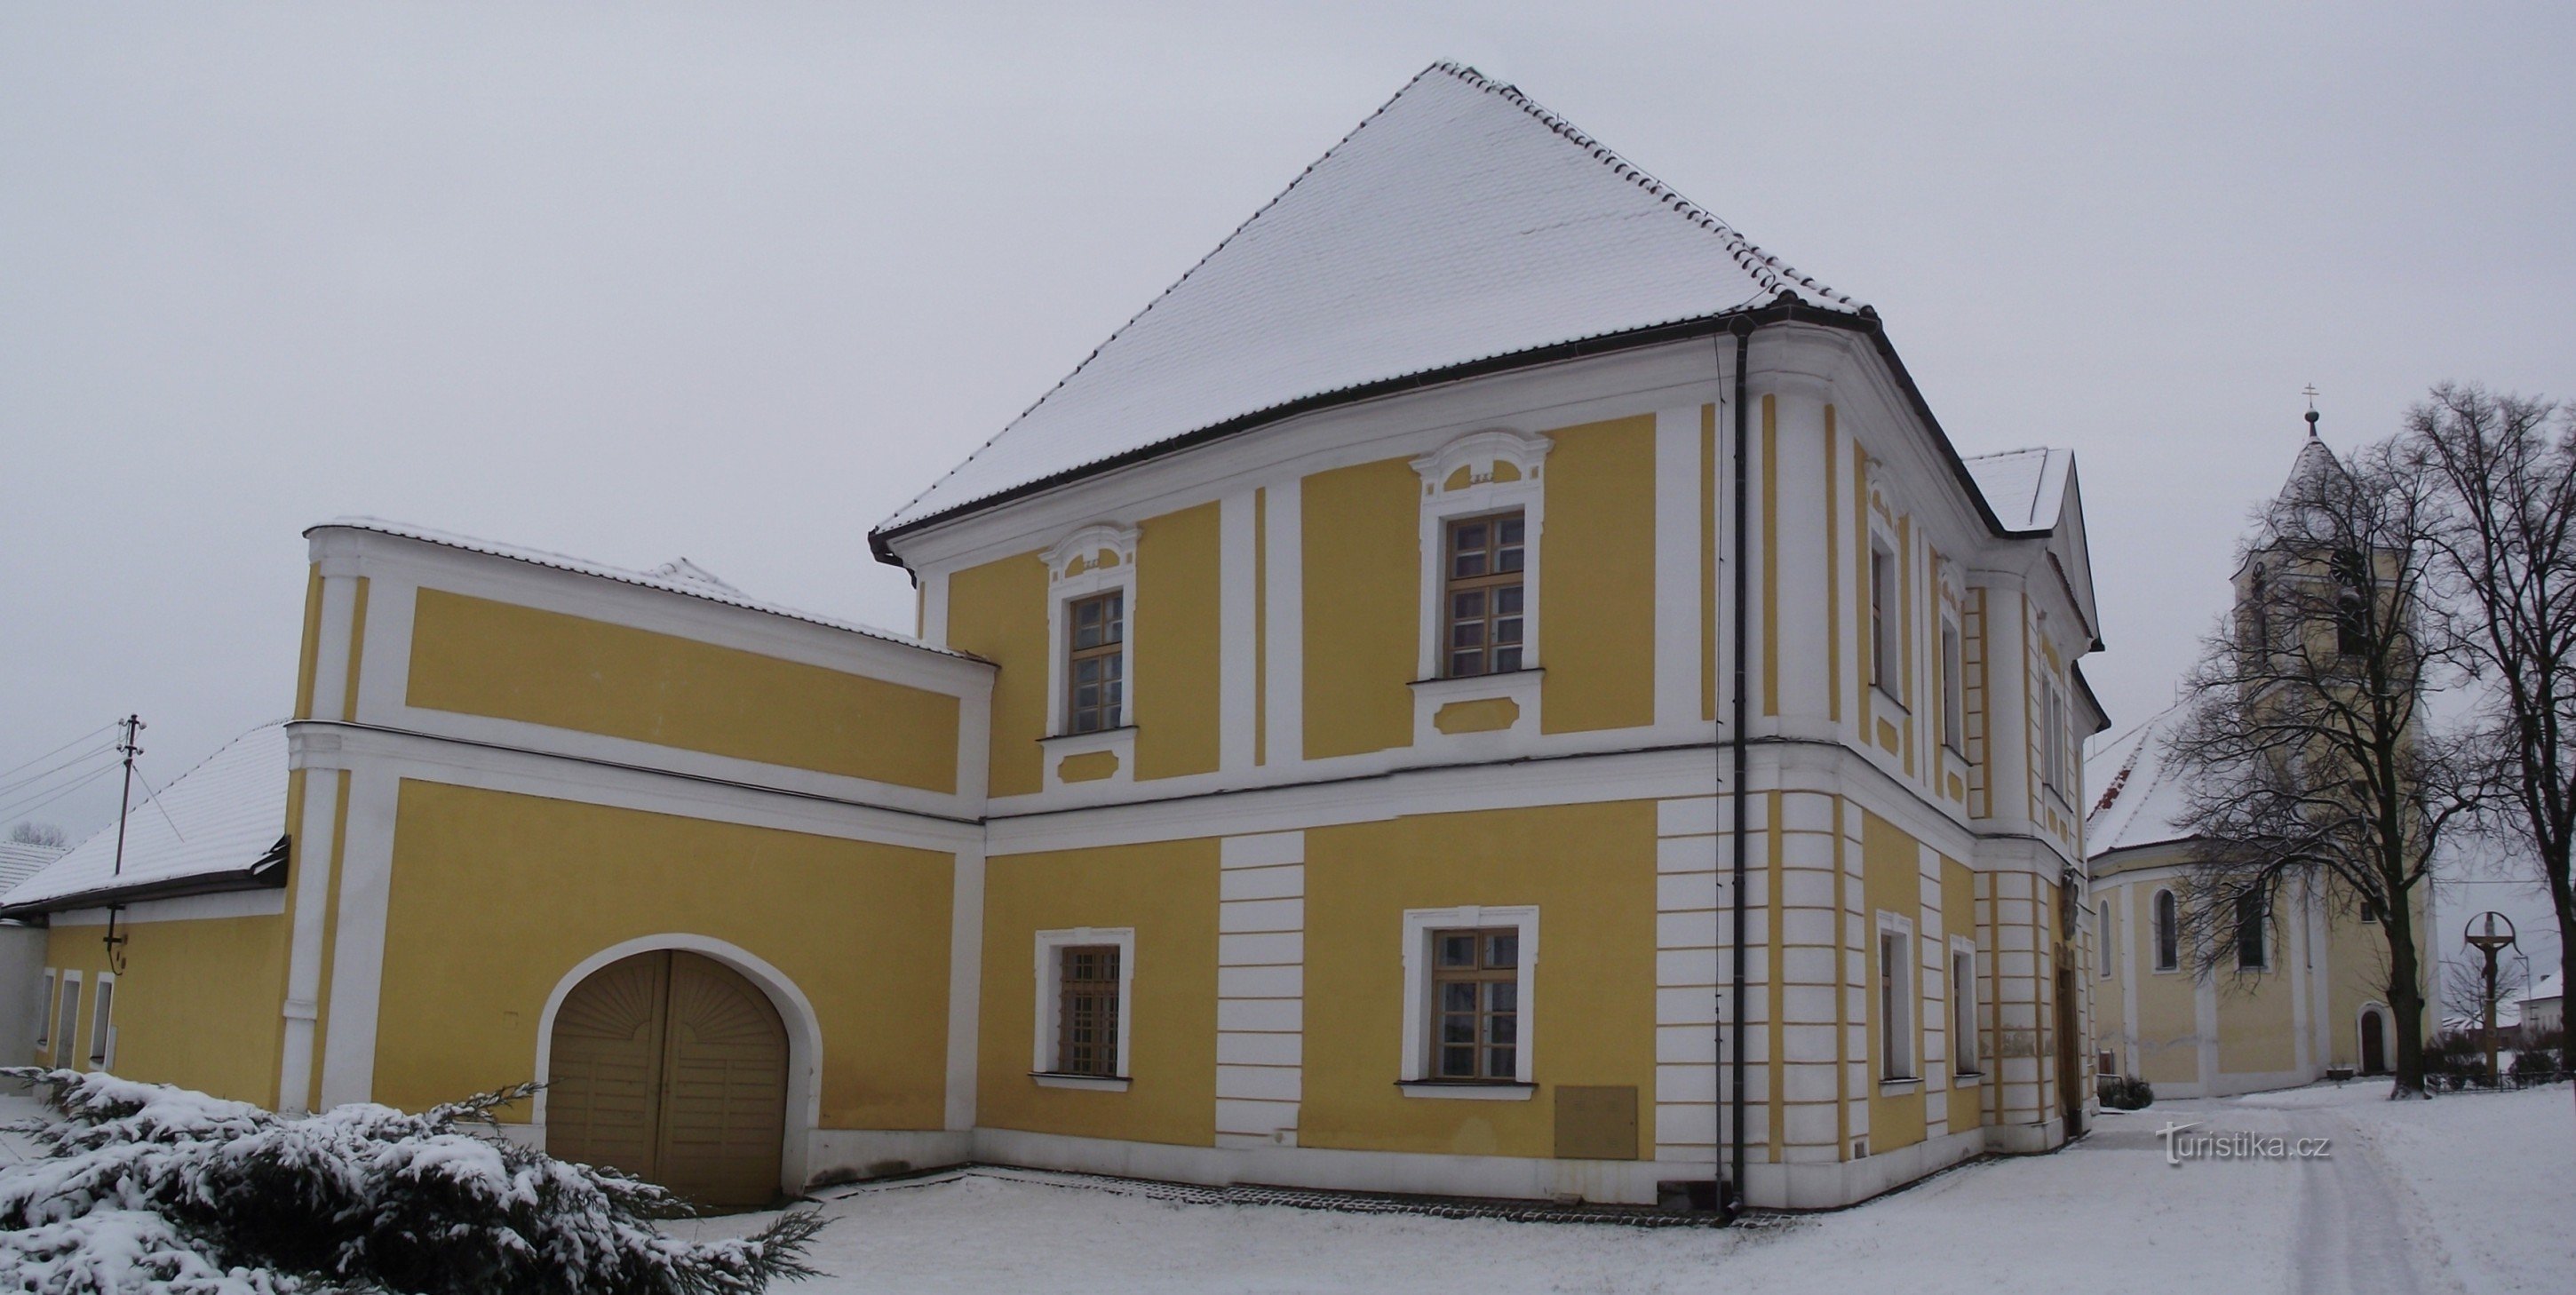 Cetkovice – plebania zwana pałacem (czy barokowy pałac pełniący funkcję plebanii?)